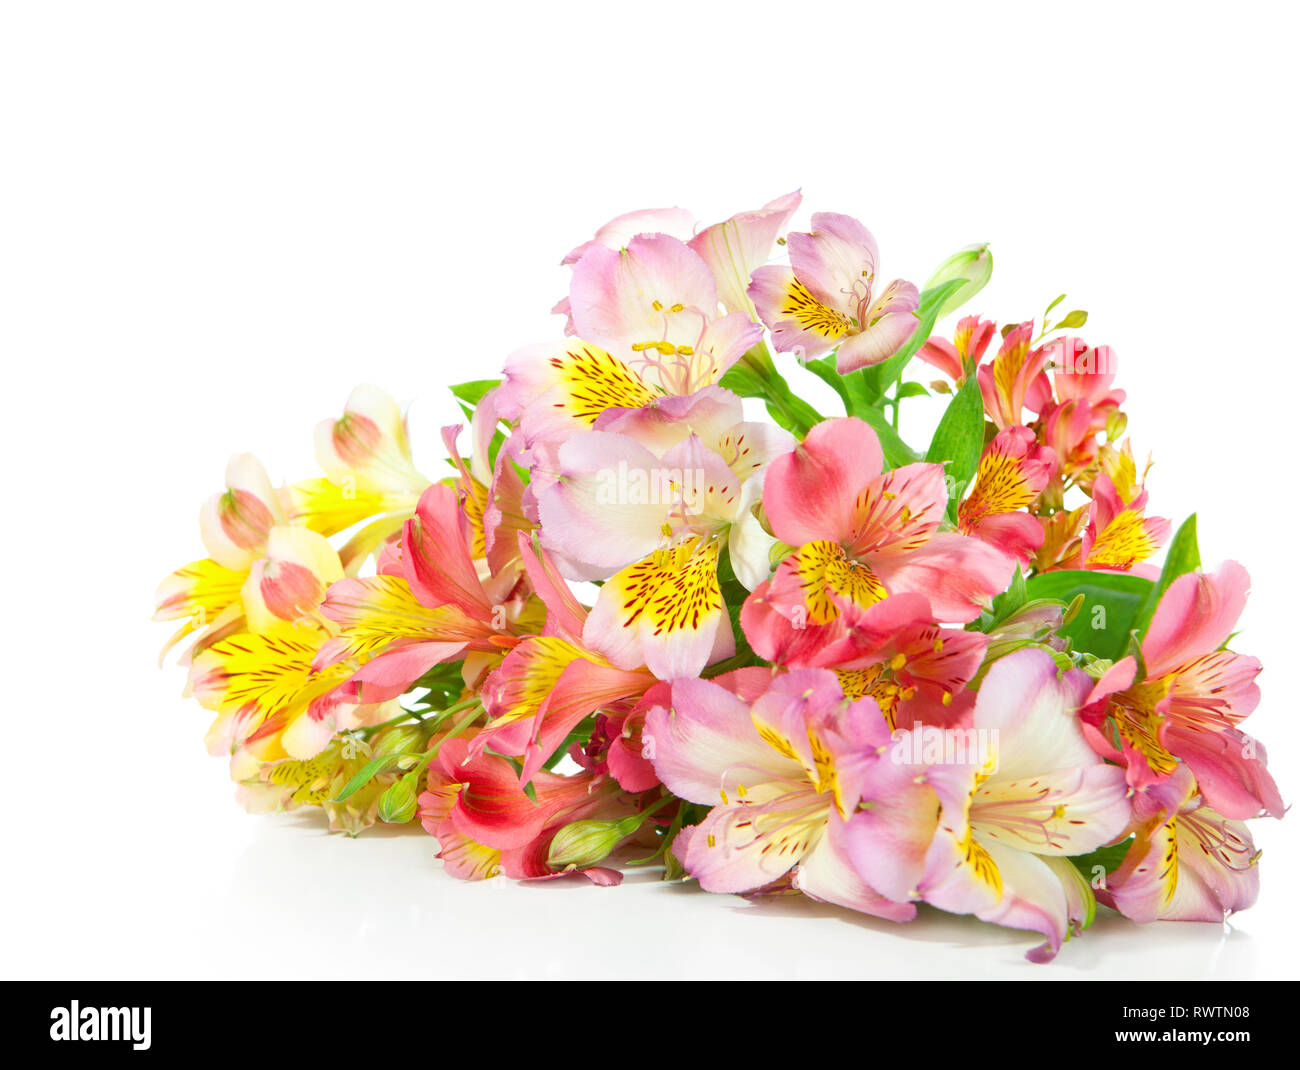 Blumenstrauß von Alstroemeria Blumen liegen auf einem weißen Hintergrund. Konzentrieren Sie sich auf die Mitte des Bouquet. Stockfoto